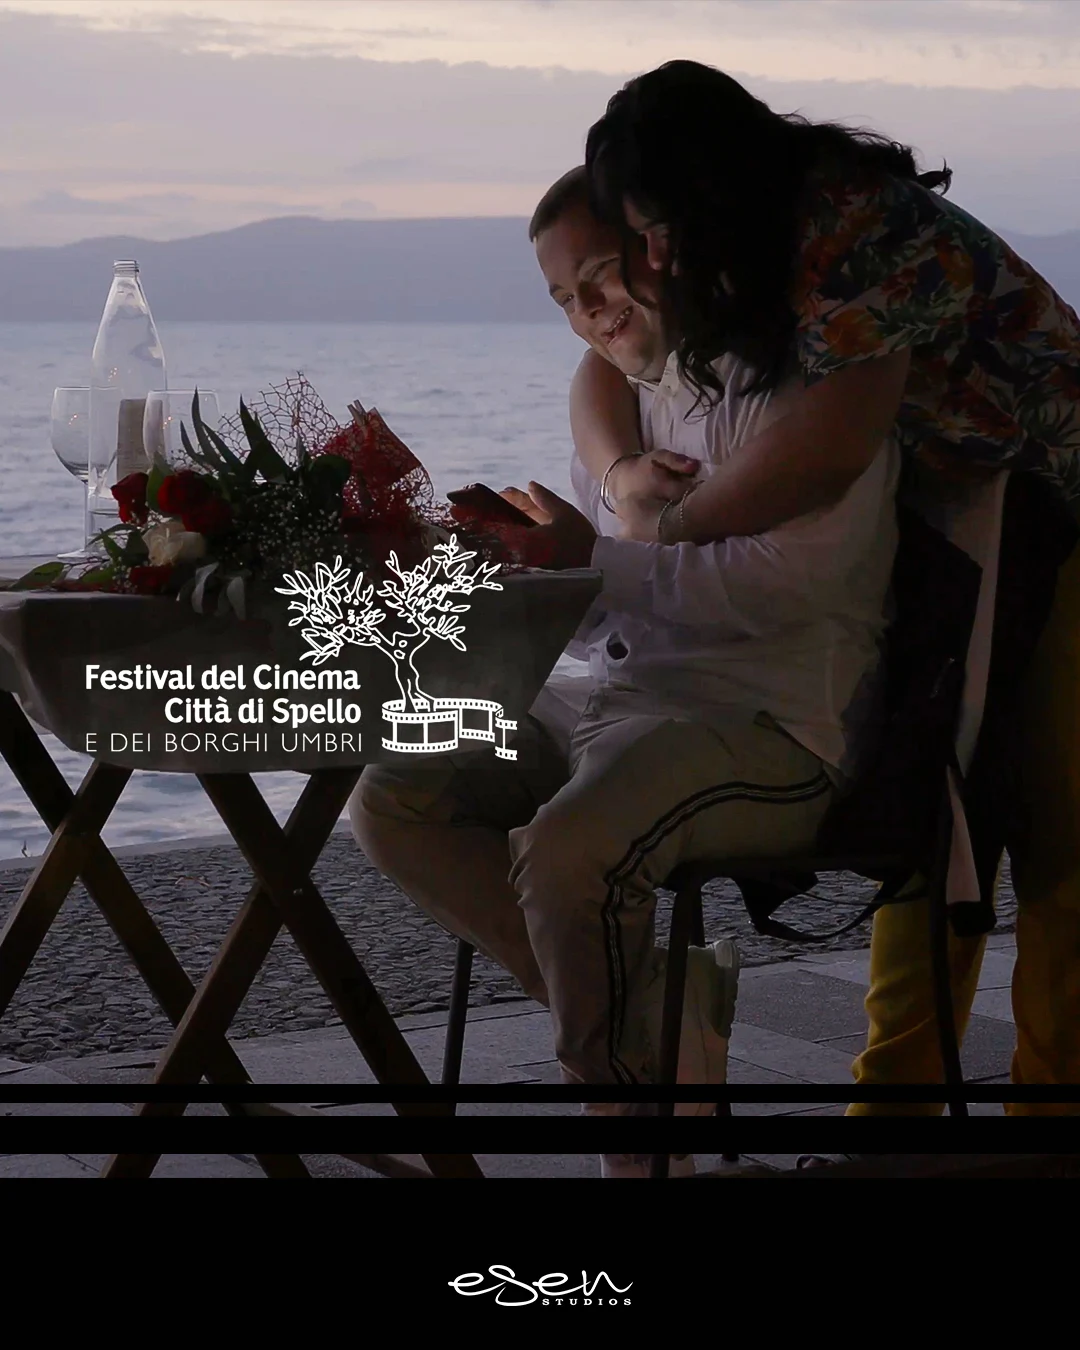 Il film documentario "Come una vera coppia" in concorso al Festival del Cinema di Spello